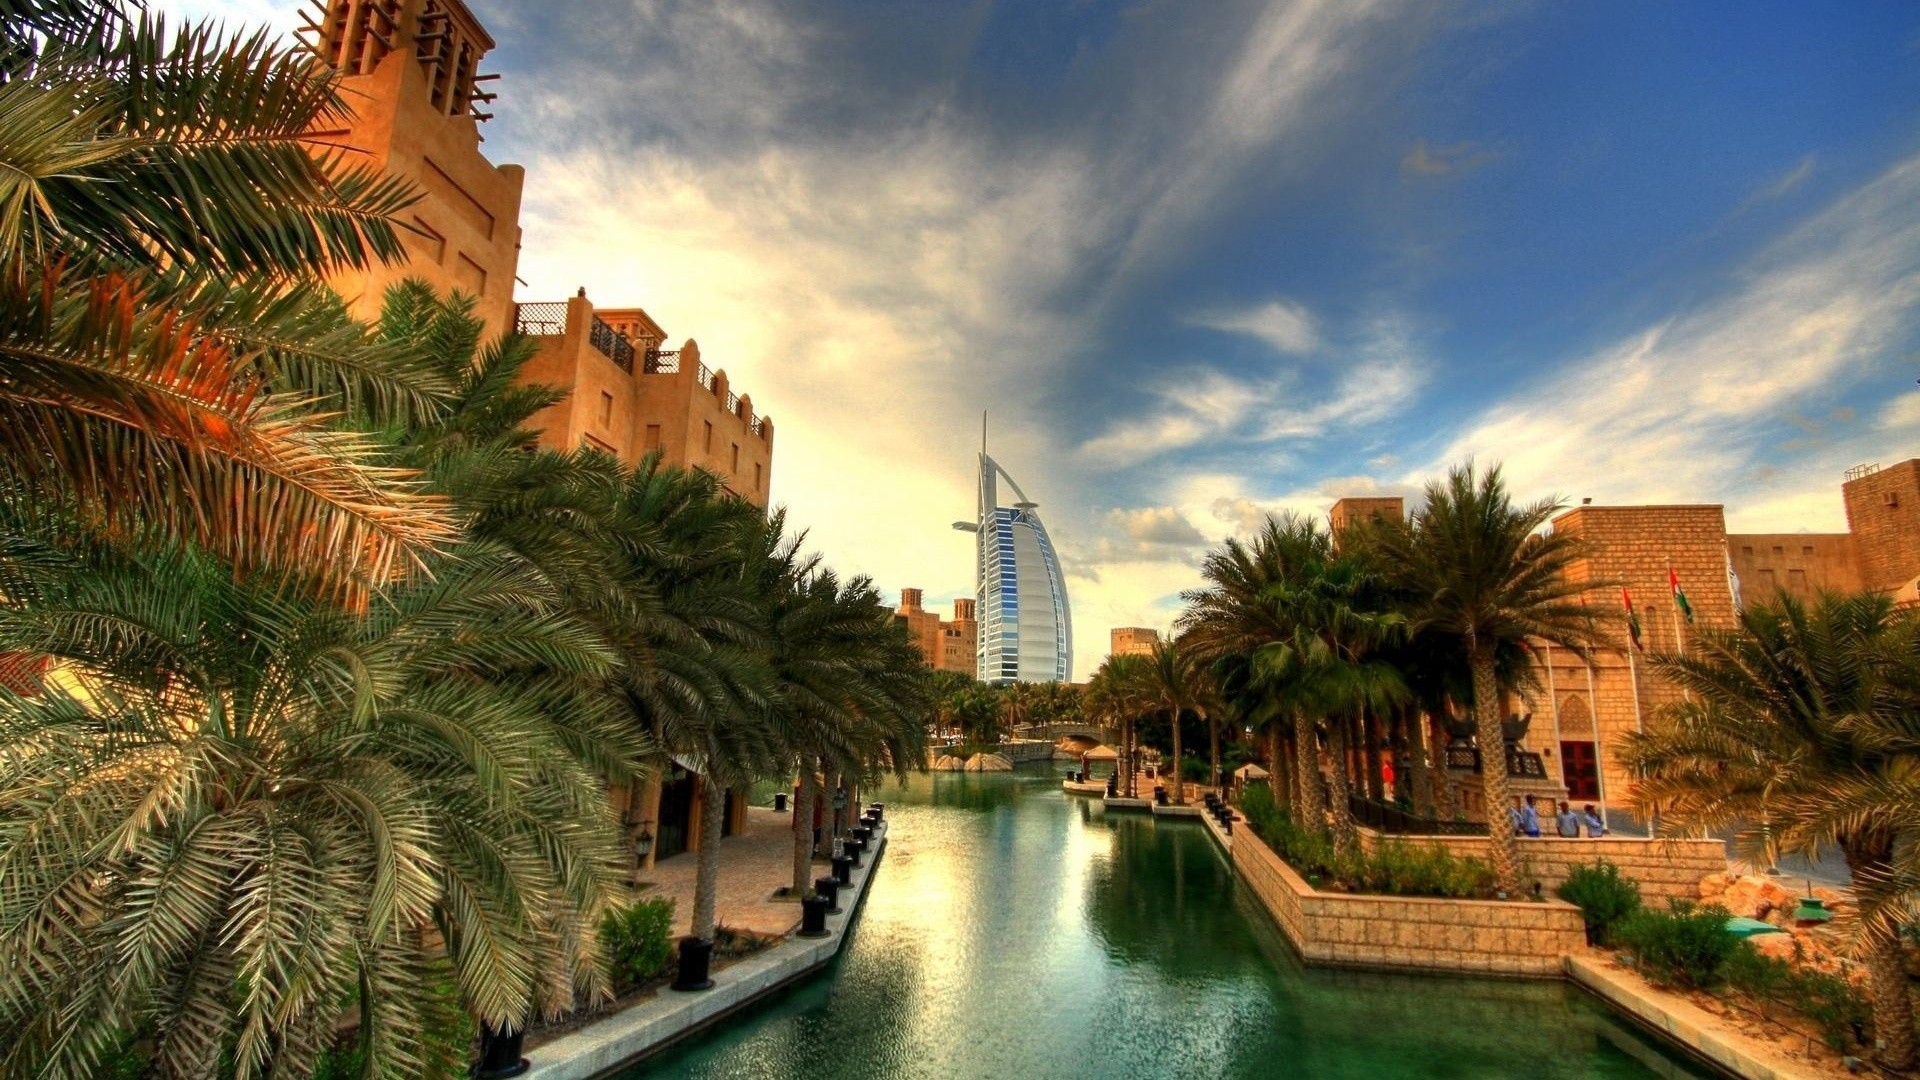 Burj Al Arab Palm Trees City 1920x1080